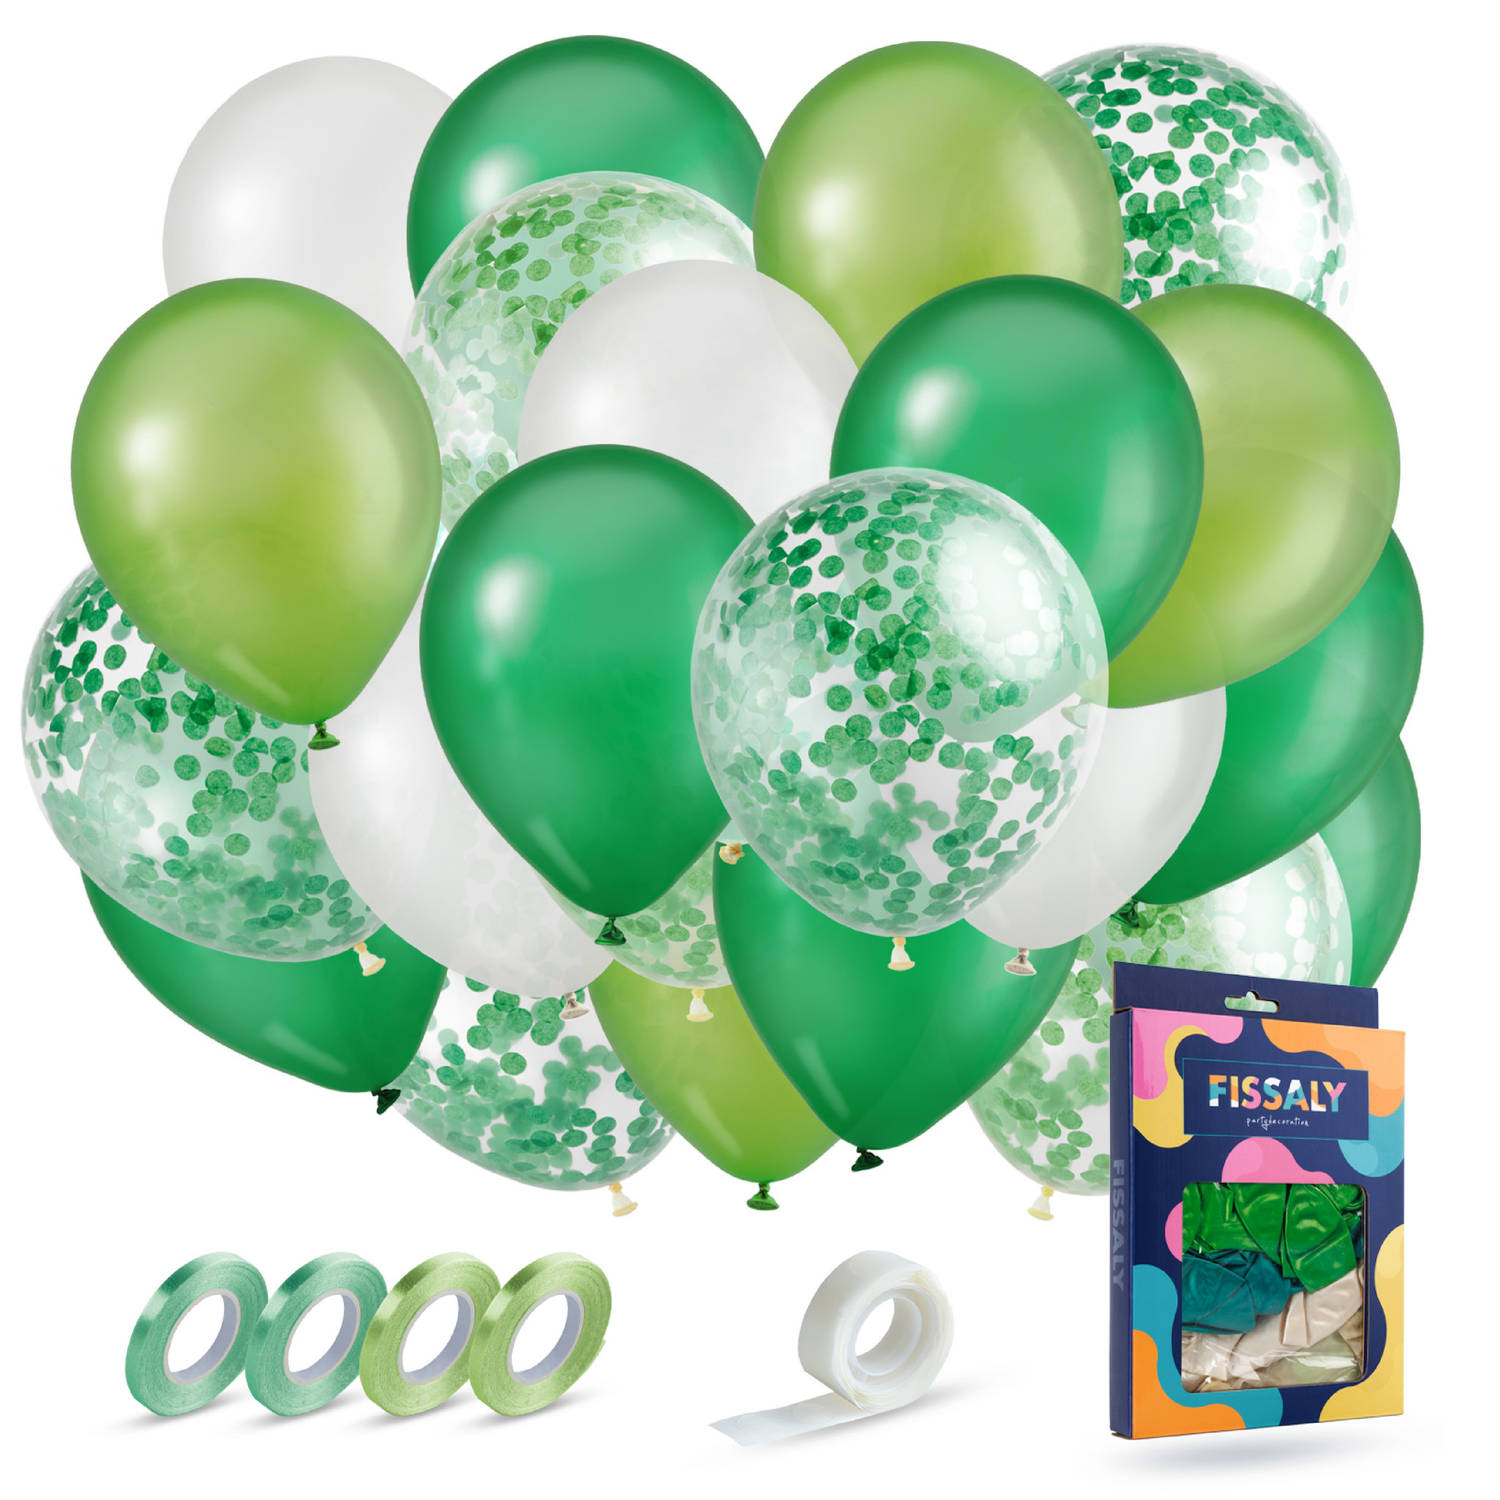 Fissaly® 40 stuks Groen, Wit & Donkergroen Helium Ballonnen met Lint – Verjaardag Versiering Decoratie – Papieren Confetti – Latex